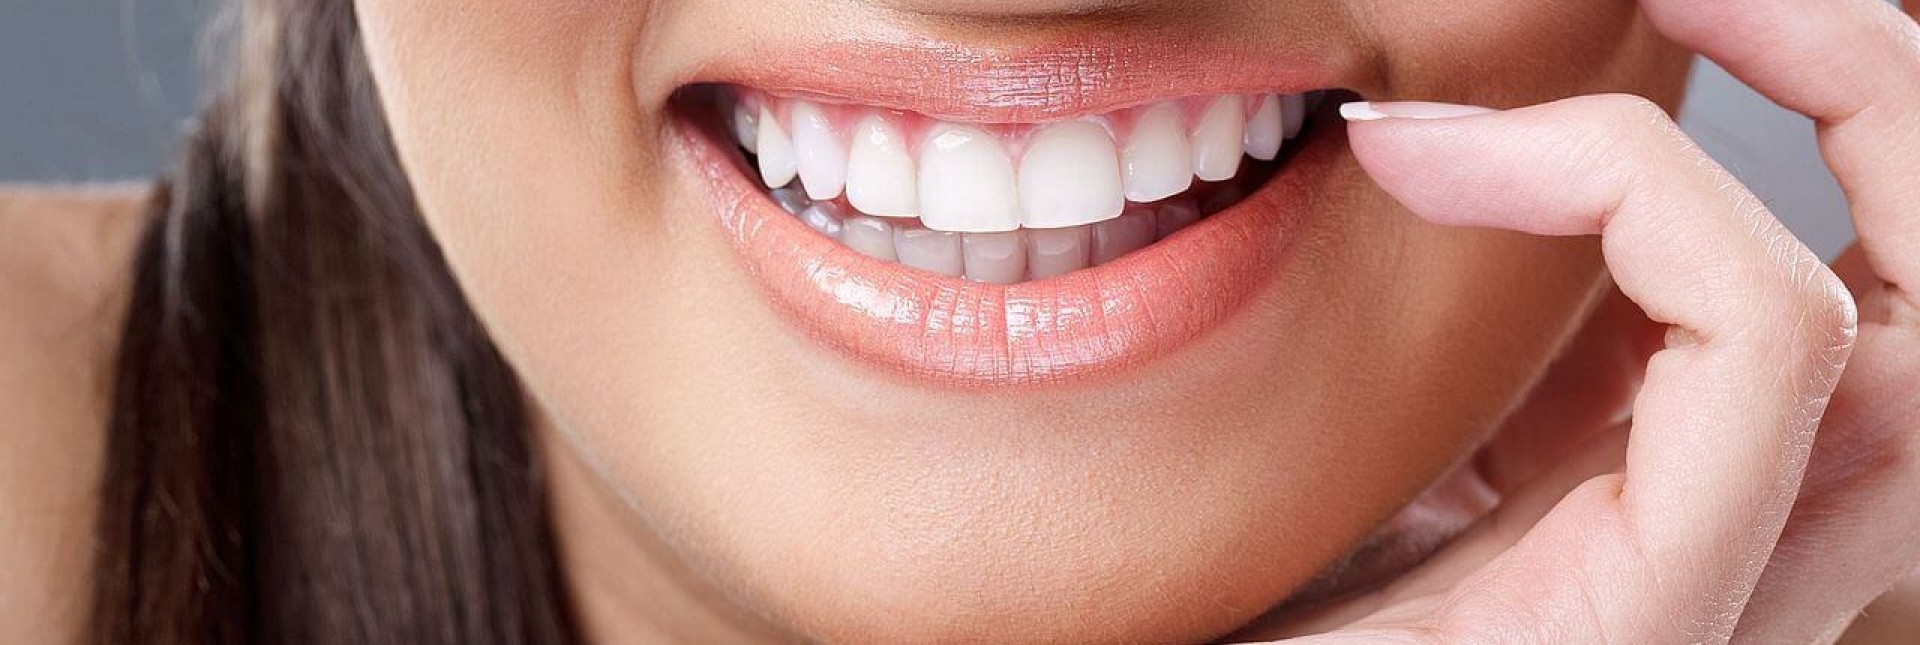 Что такое прямые или композитные виниры? Это способ недорого и быстро сделать зубы красивыми